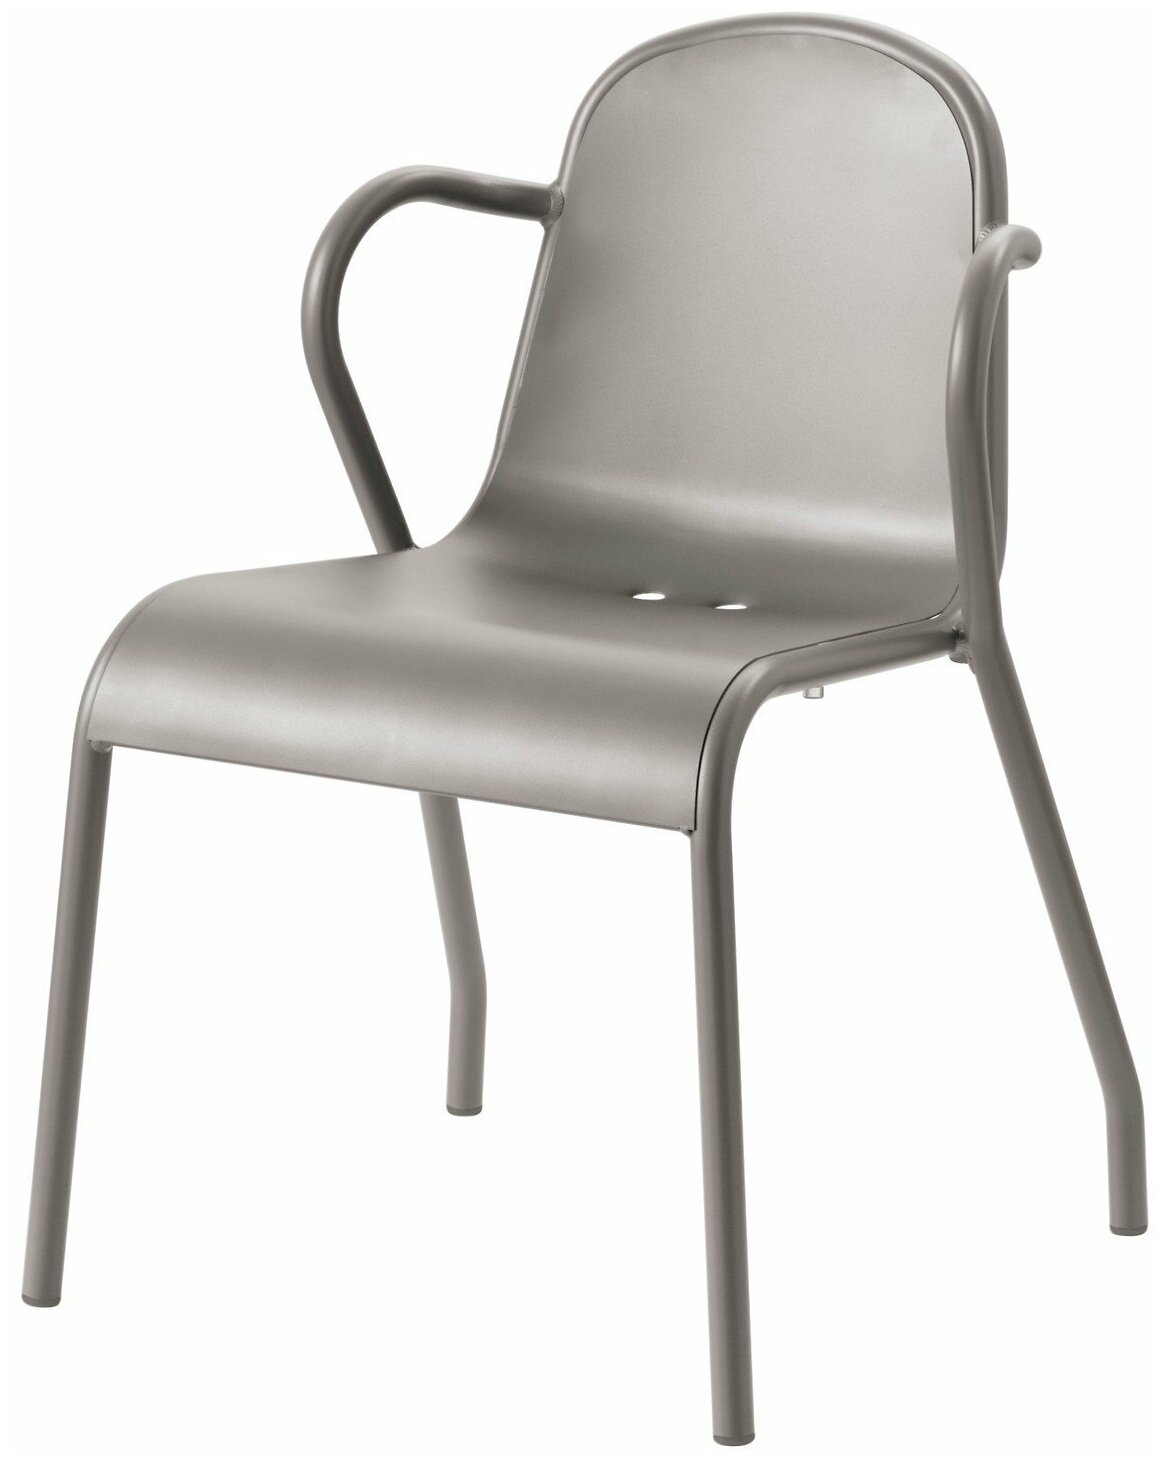 Тунхольмен Садовый стул, цвет серый (для сада, кафе, баров, ресторанов), комплект 10шт, икеа